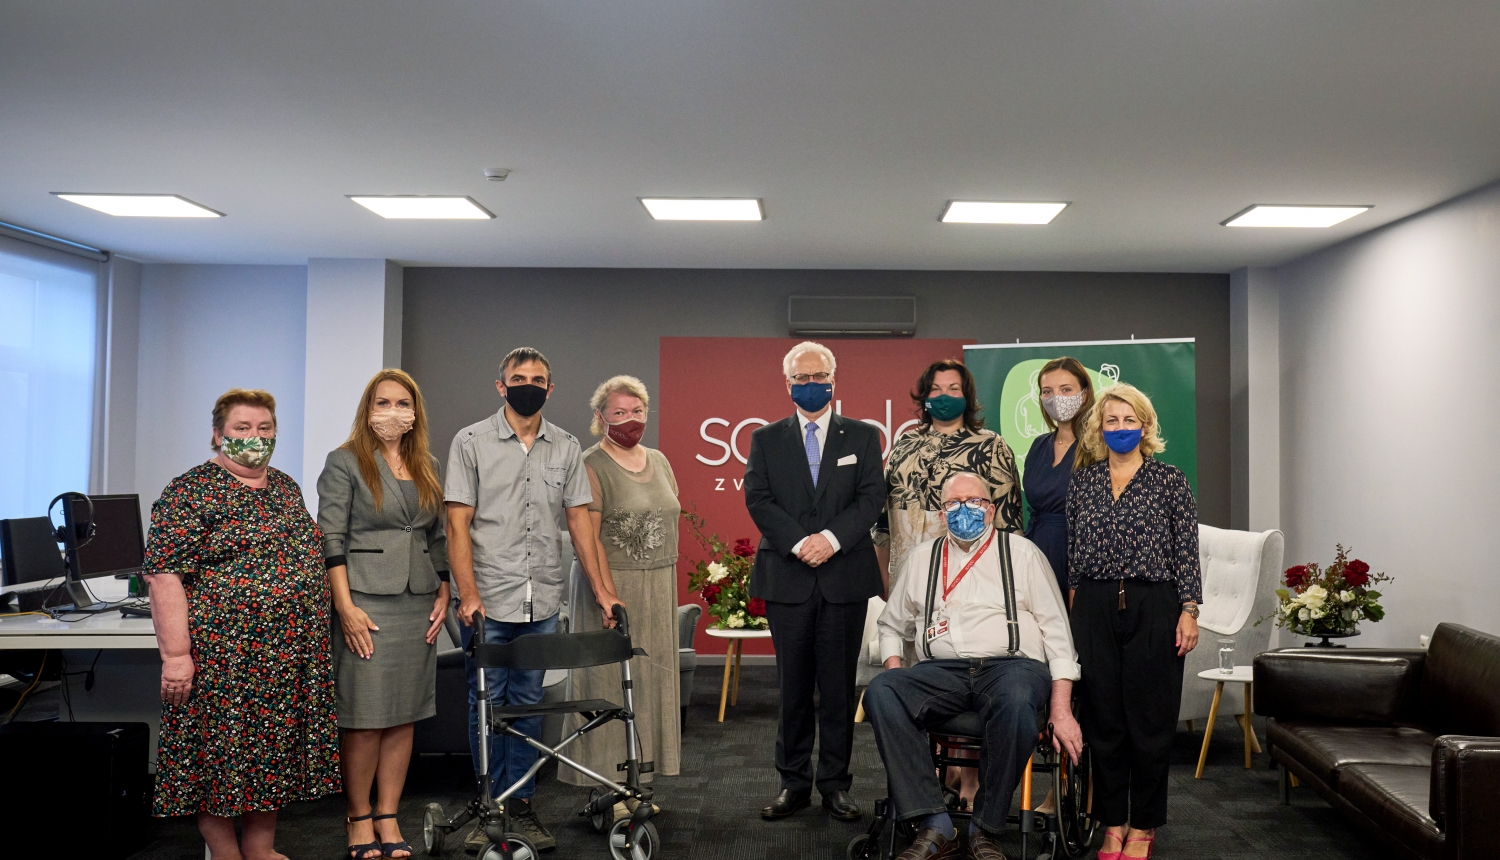 Valsts prezidents Egils Levits apmeklēja sociālo uzņēmumu “Sonido”, lai ar uzņēmuma darbiniekiem pārrunātu nodarbinātības iespējas cilvēkiem ar invaliditāti, kā arī iepazītos ar uzņēmuma sociālo projektu “Parunāsim?”